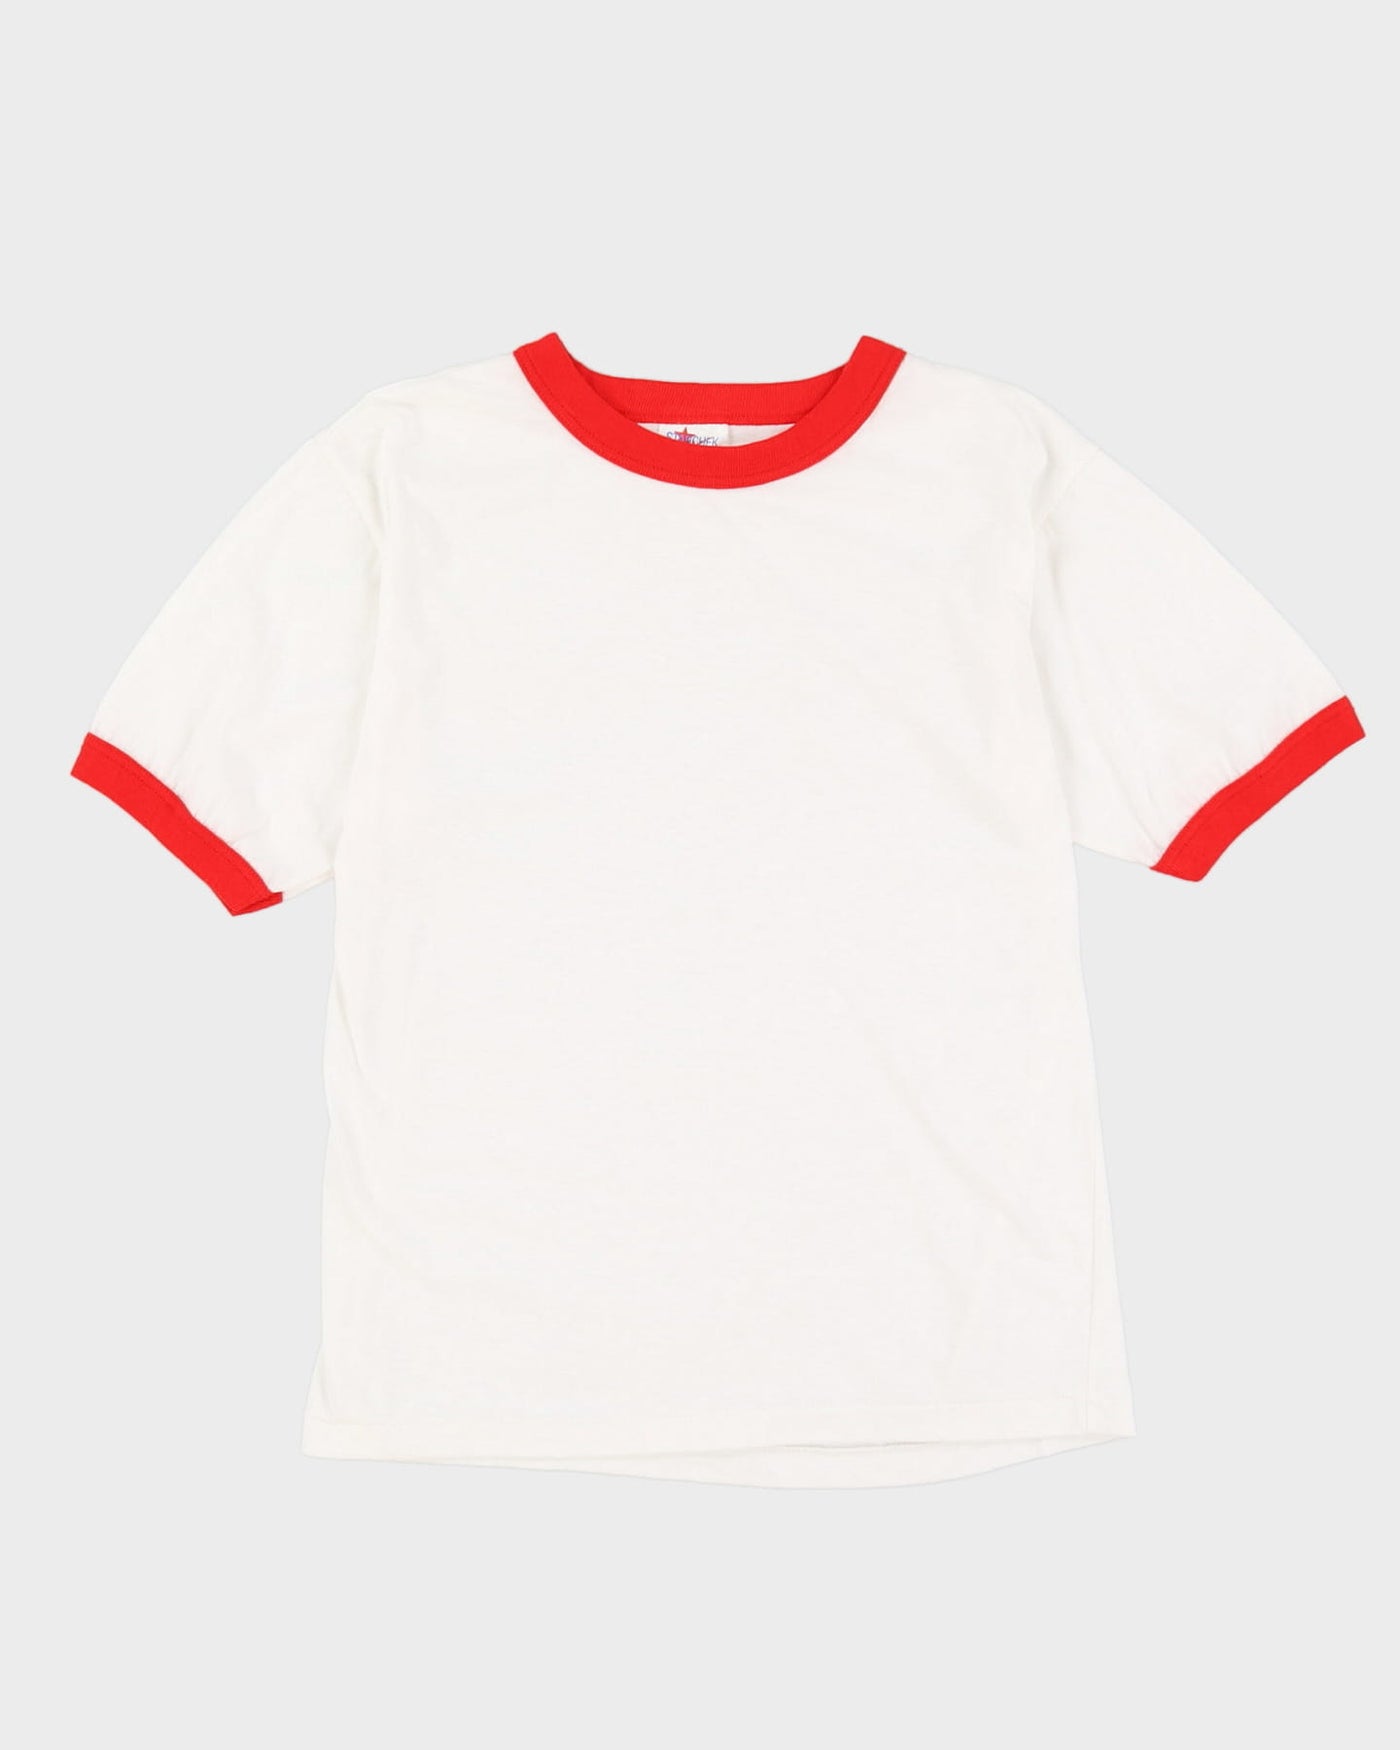 80s Plain White / Red Single Stitch Ringer T-Shirt - S